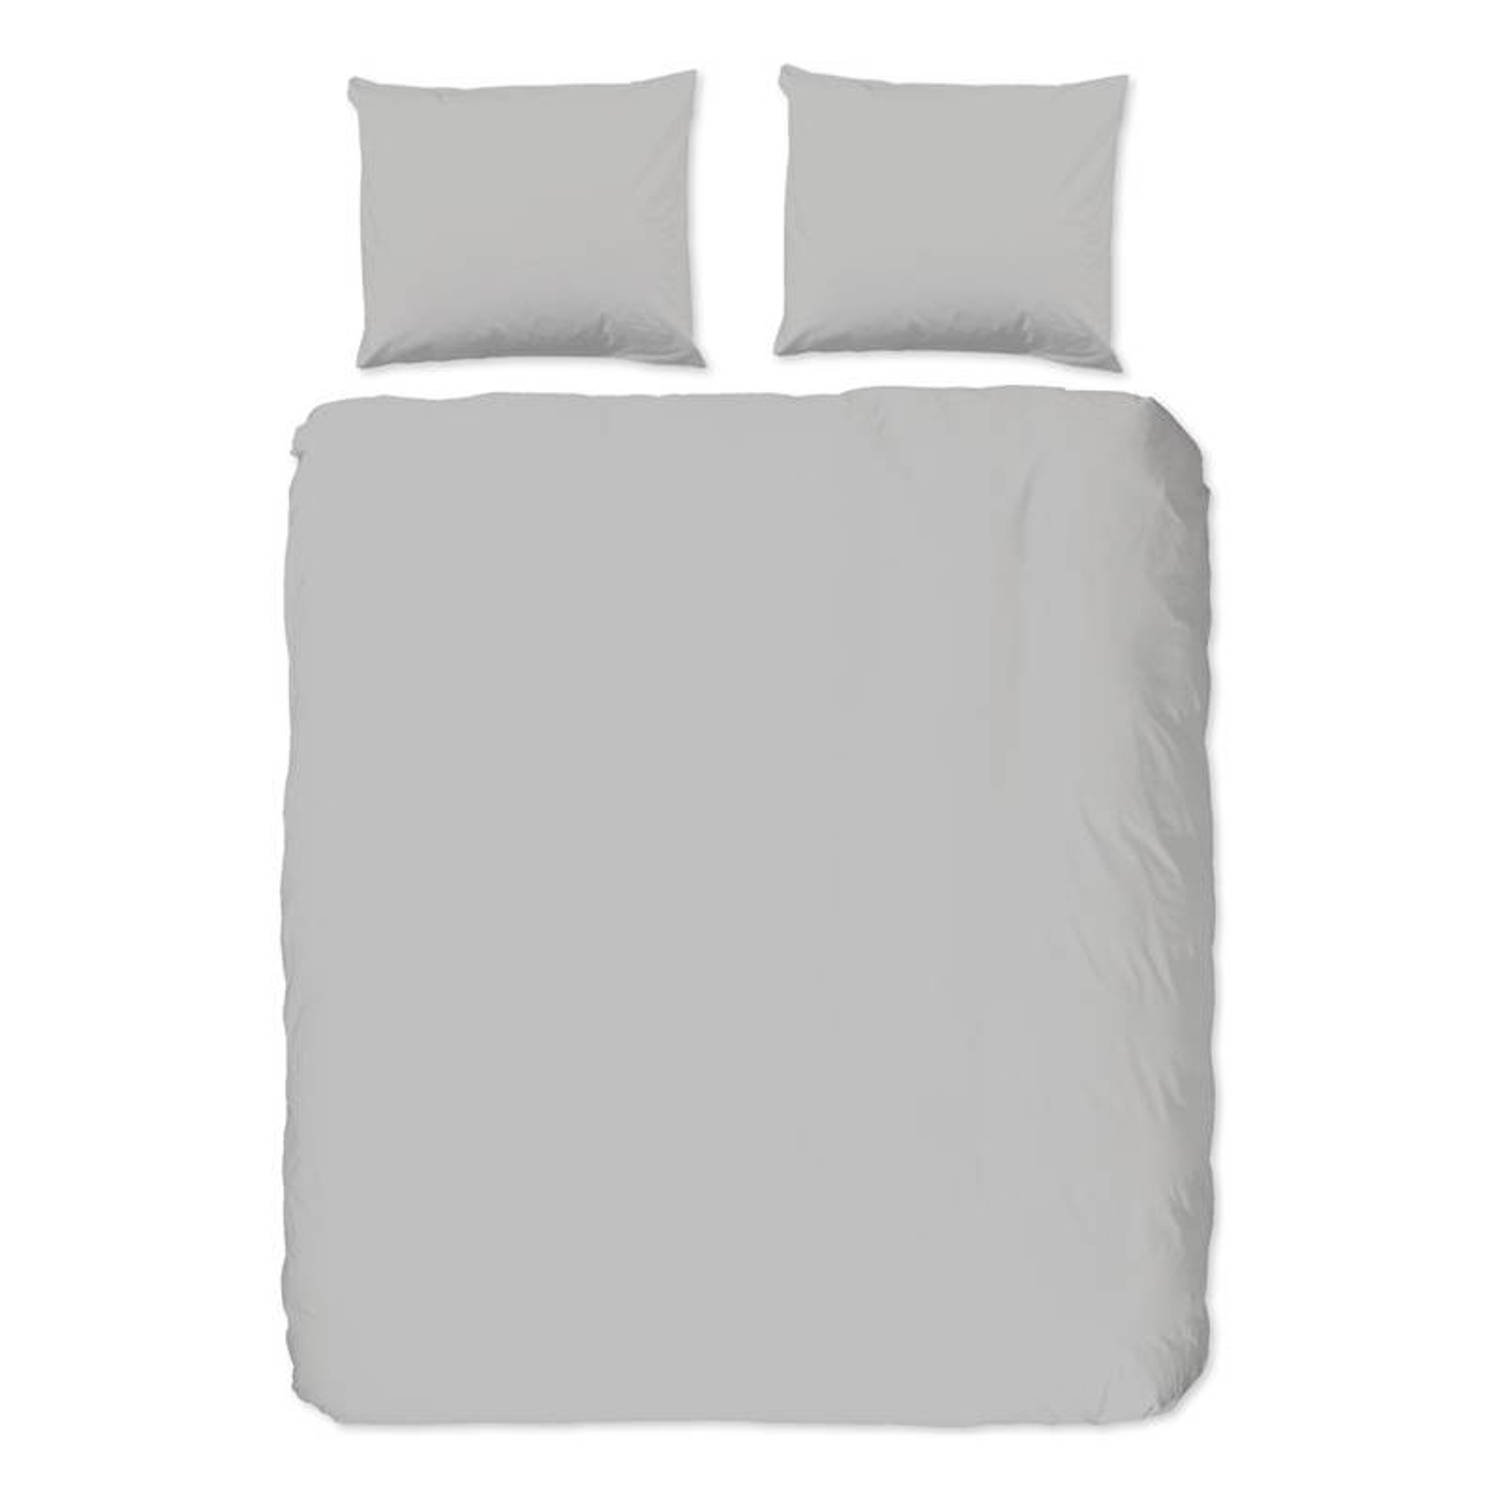 Good Morning Uni dekbedovertrek - Lits-jumeaux (240x200/220 cm + 2 slopen) - Katoen - Light grey